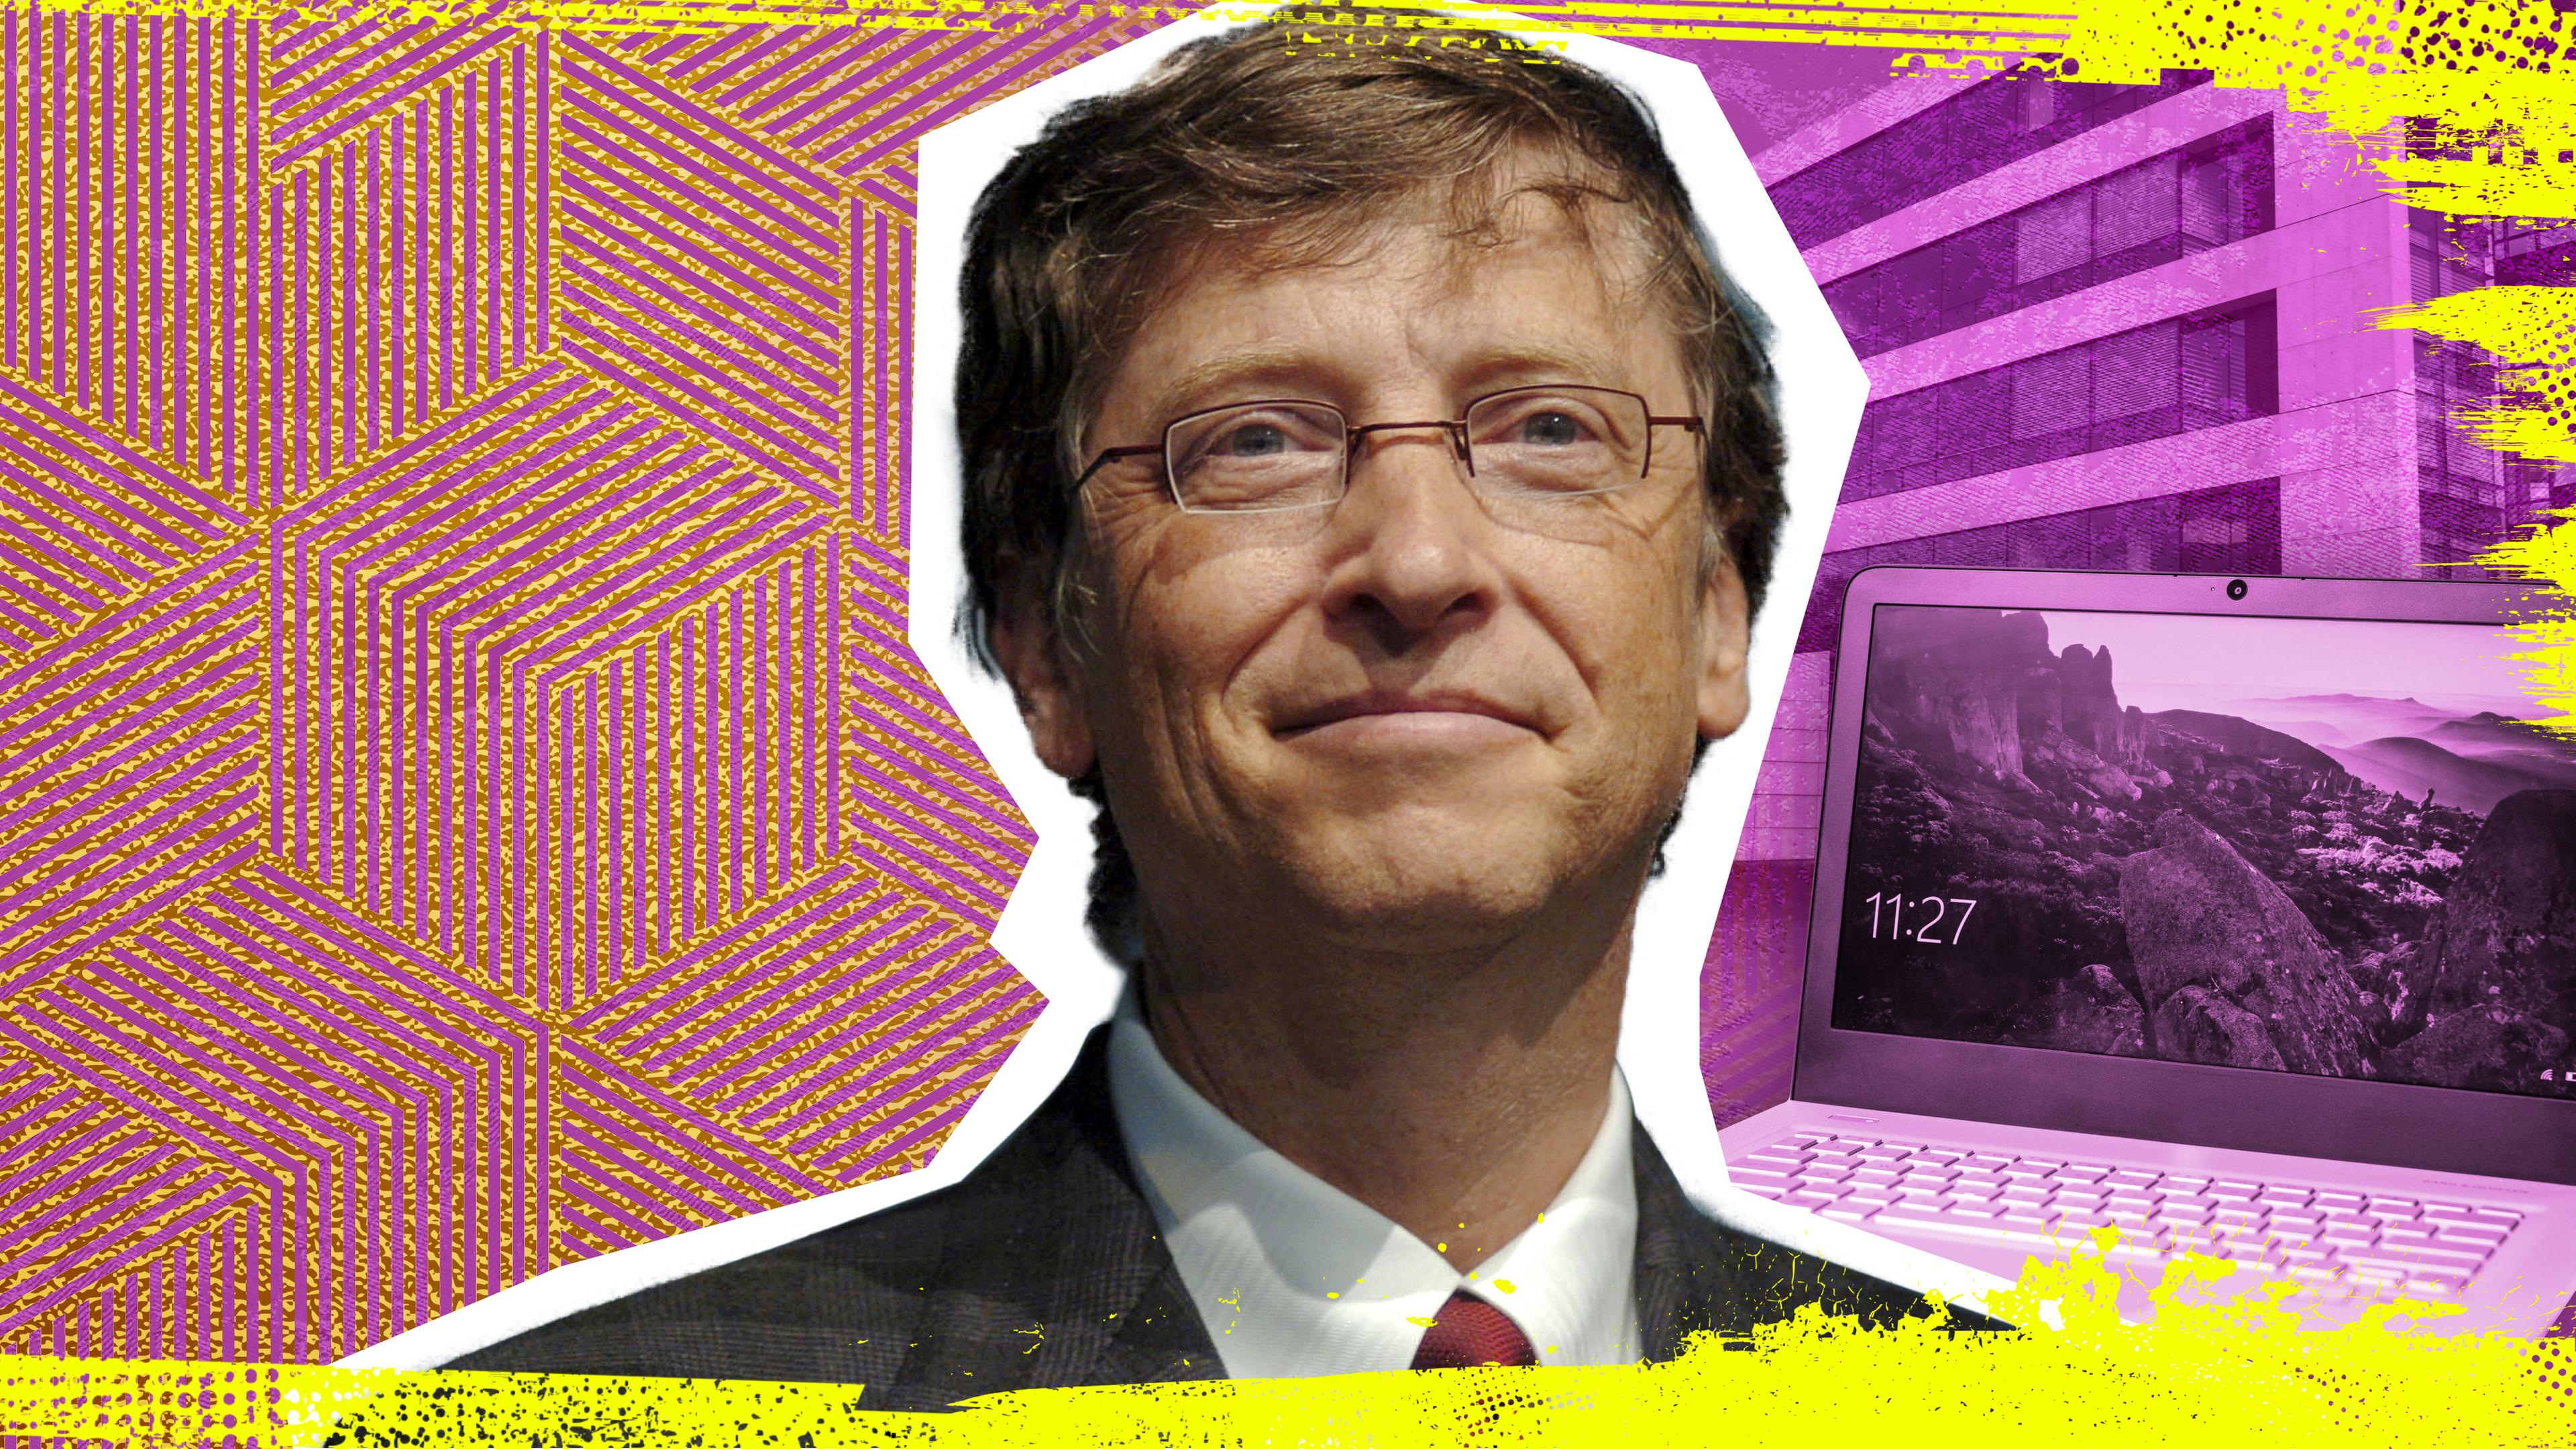  Zentral ein Porträt von Bill Gates, im Hintergrund ein Microsoft PC und der Firmensitz der Gates Foundation.